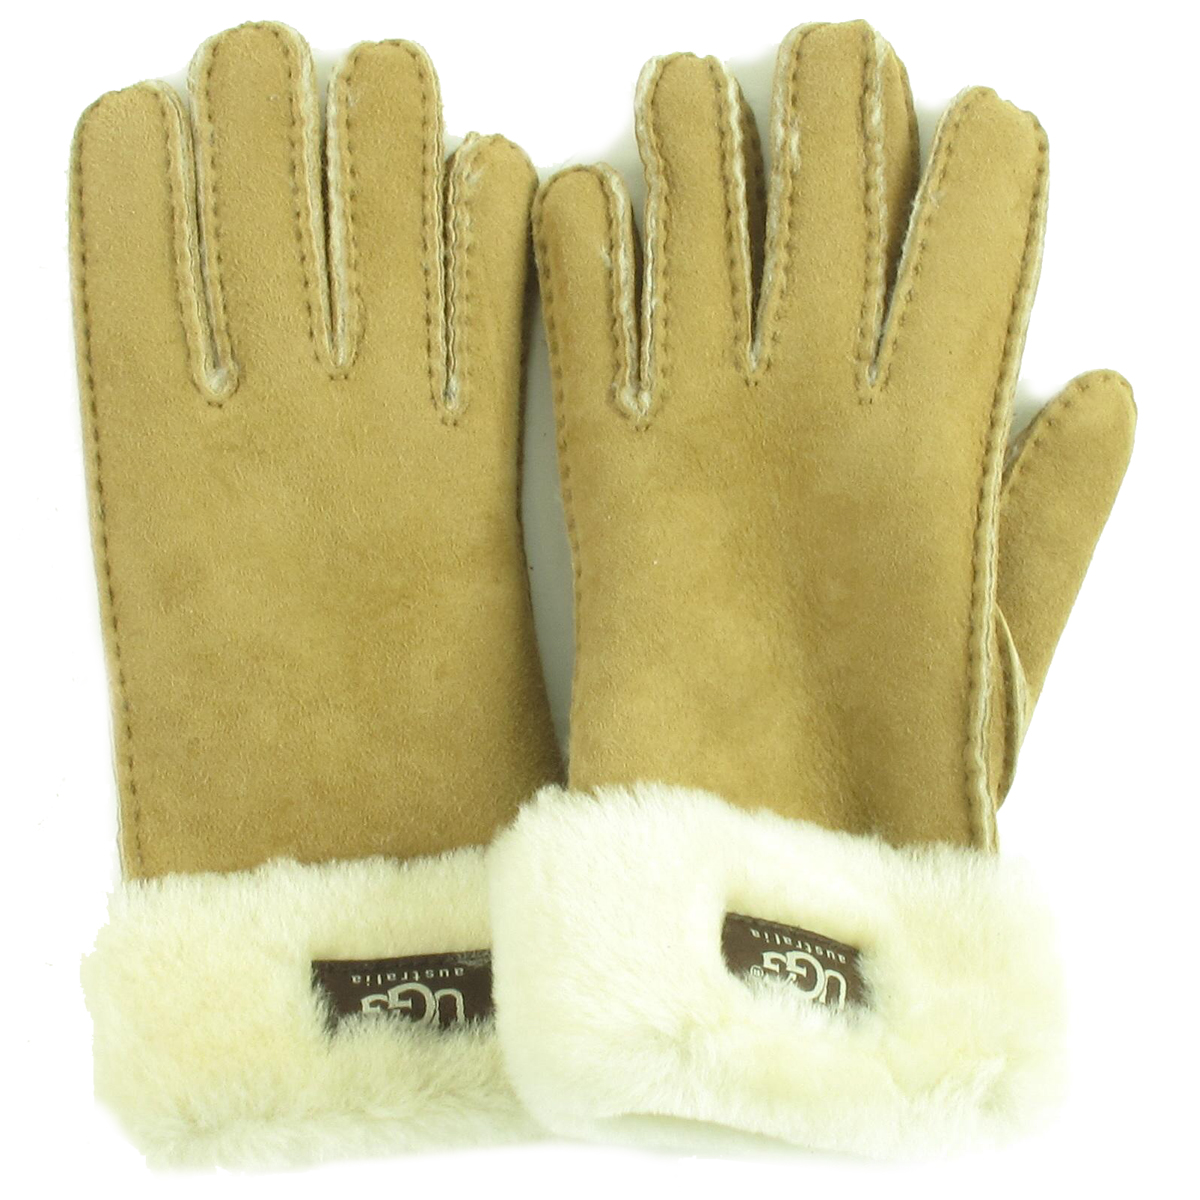 ze groot Onbepaald UGG handschoenen turn cuff glove | Manwood